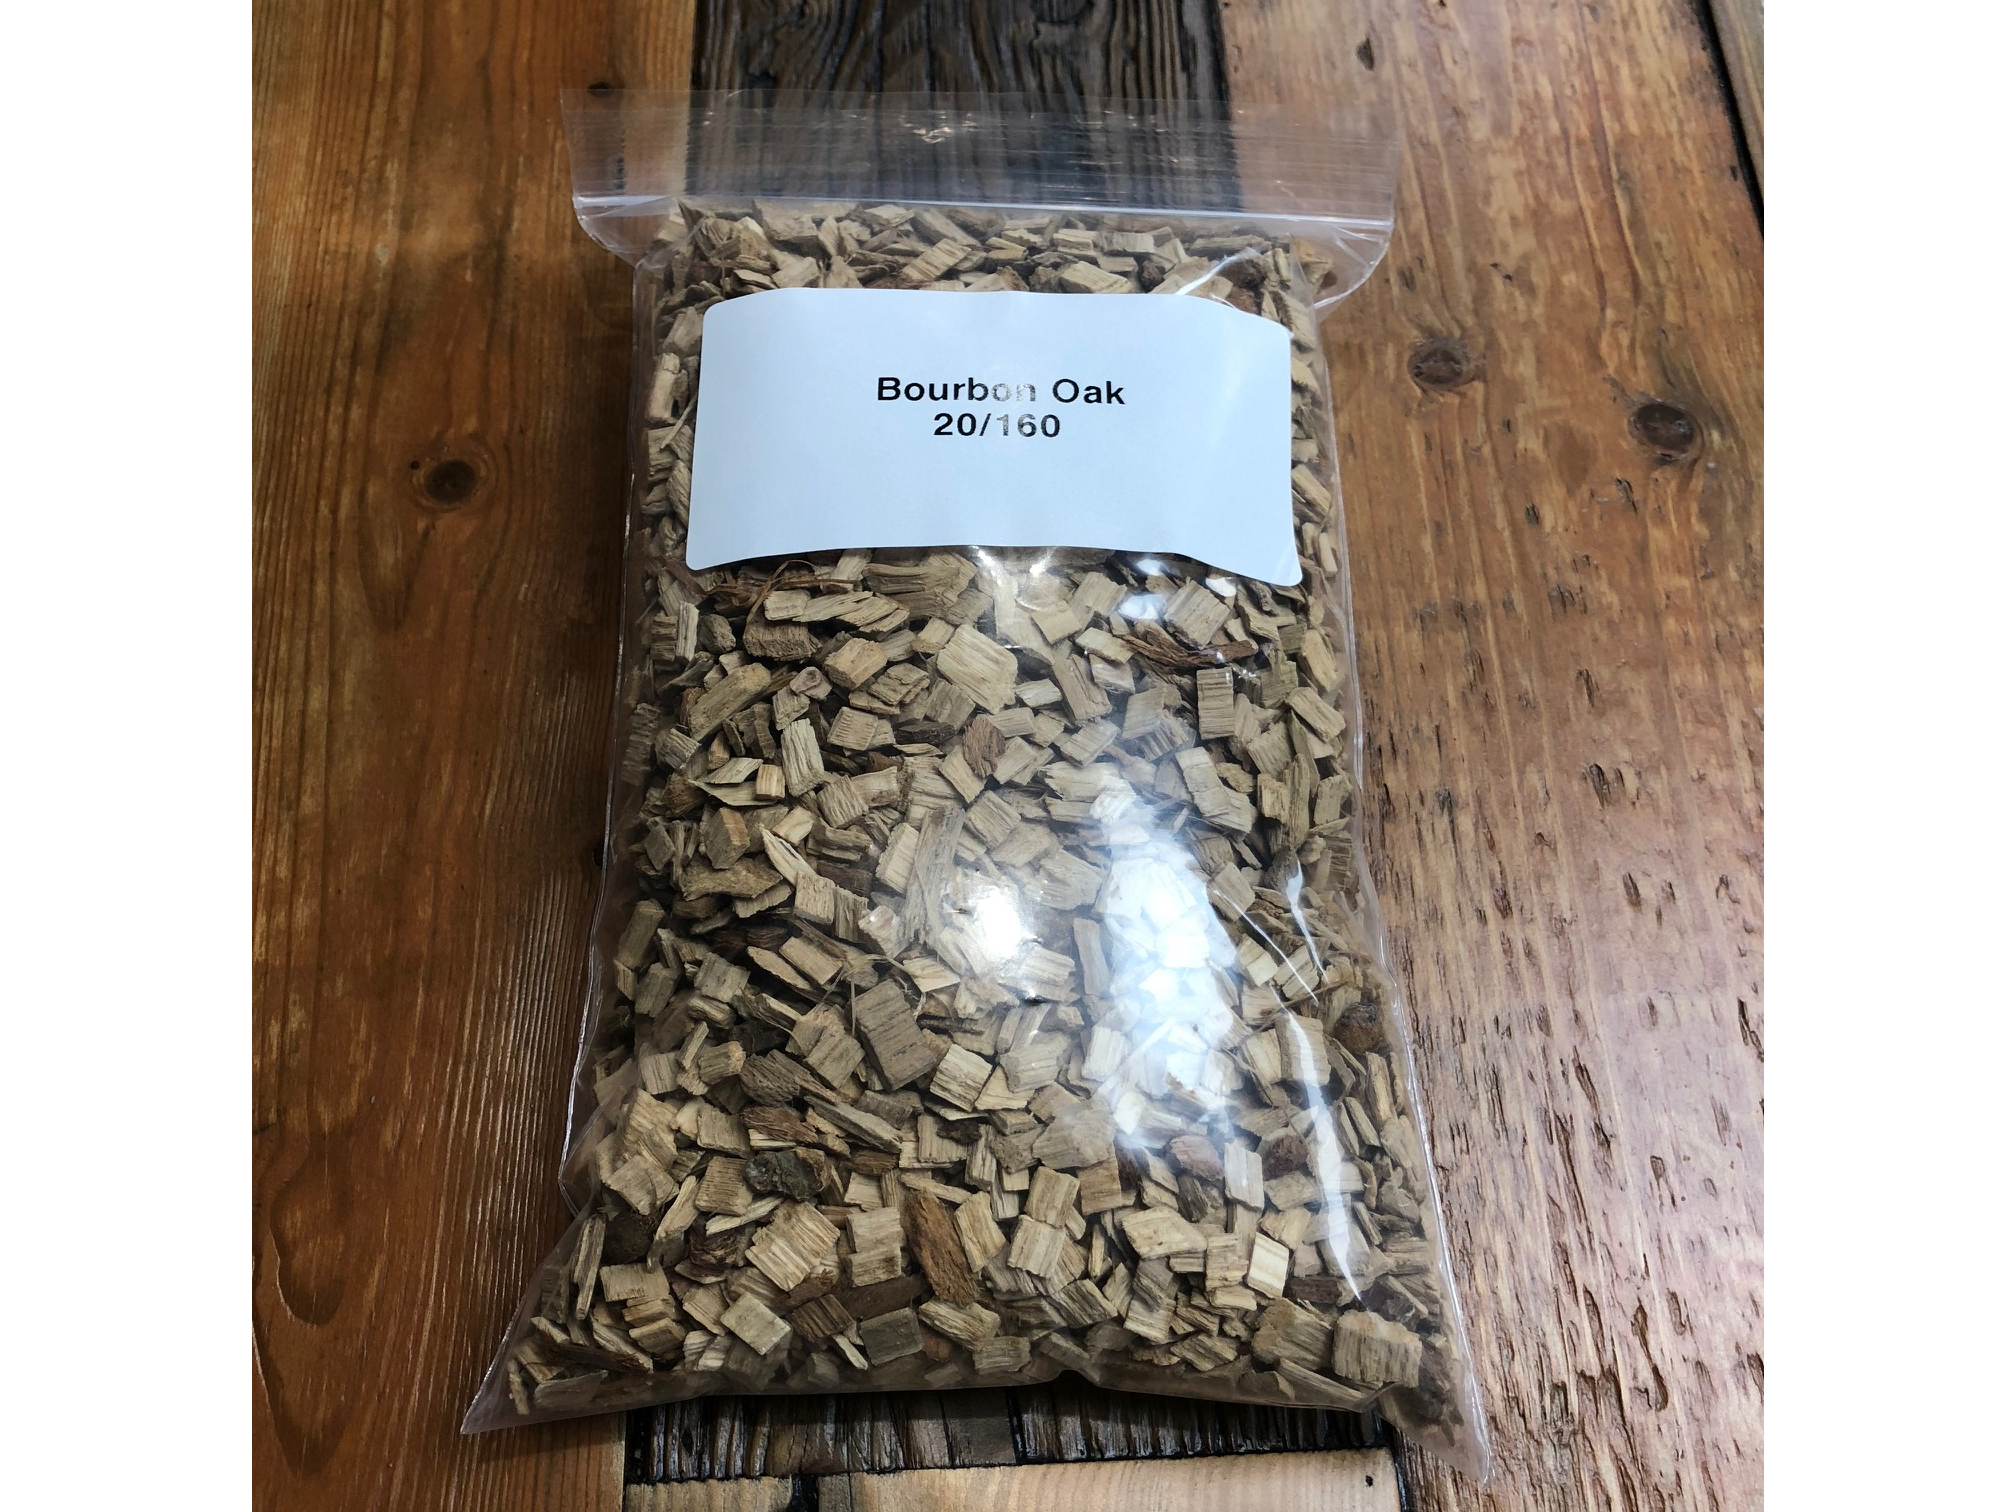 Bourbon Oak Wood Chips 20/160  15KG Sack